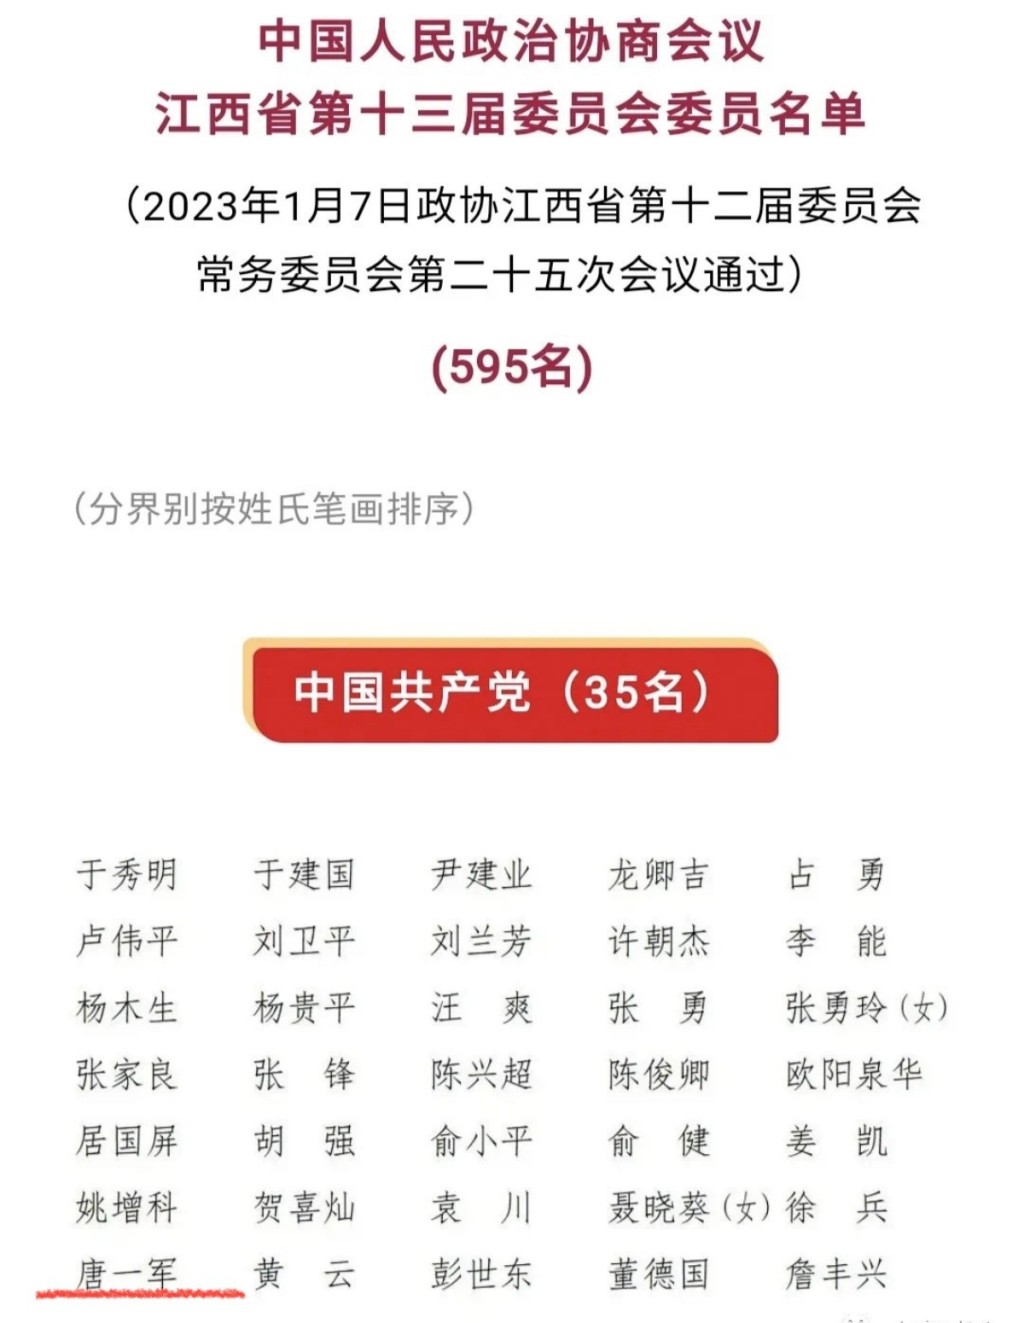 唐一军名字出现在新一届江西省政协委员名单上。